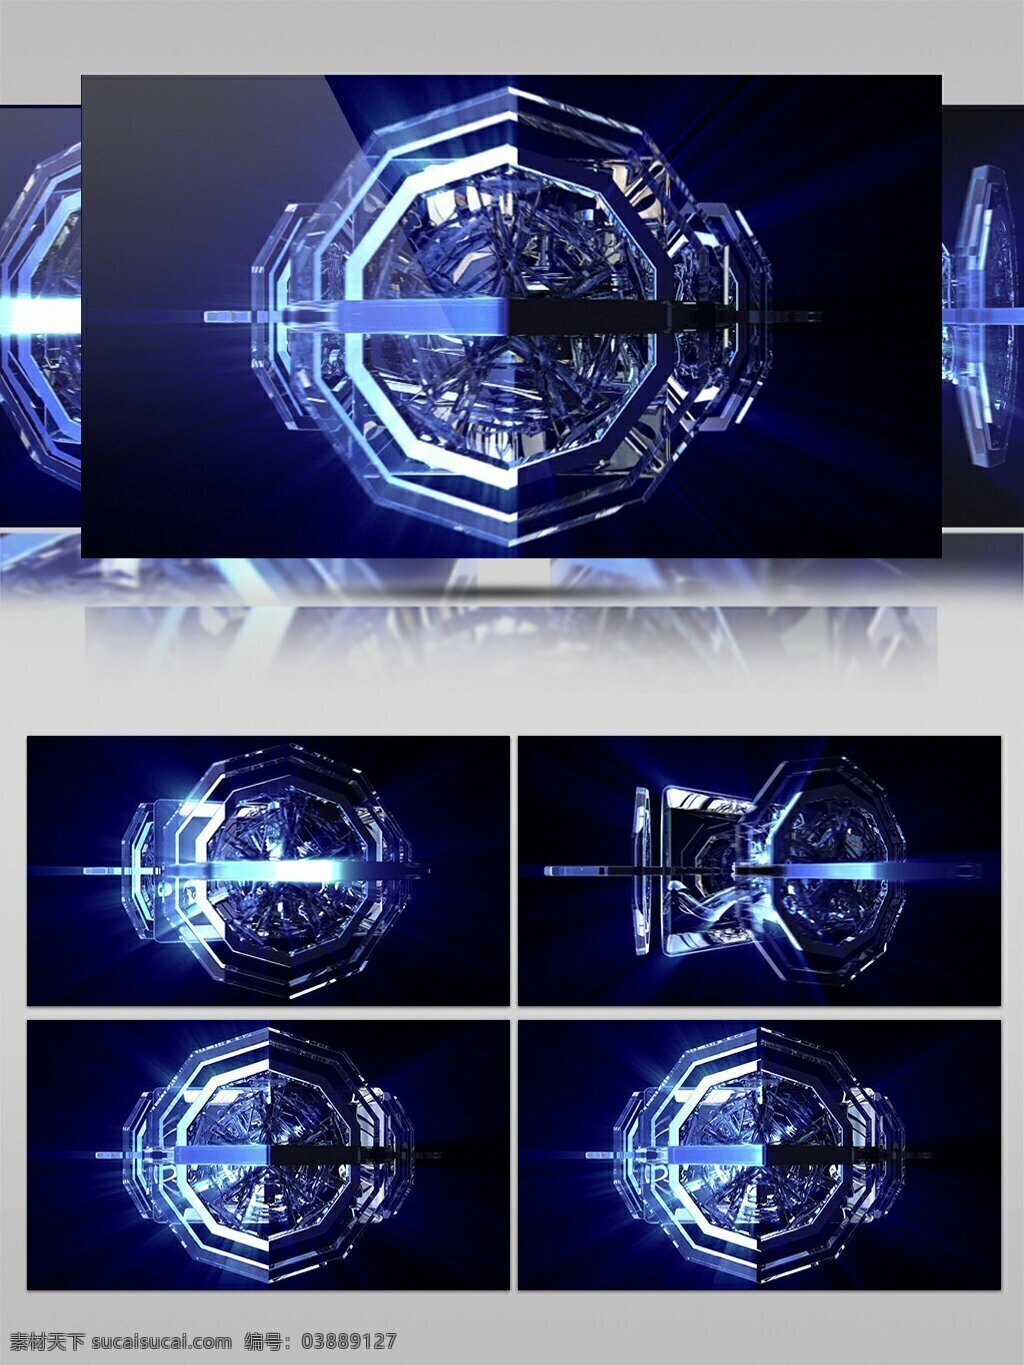 酷 炫 大气 机械 经典 简约 视频 视频素材 动态视频素材 淡雅 高清视频素材 幽蓝色